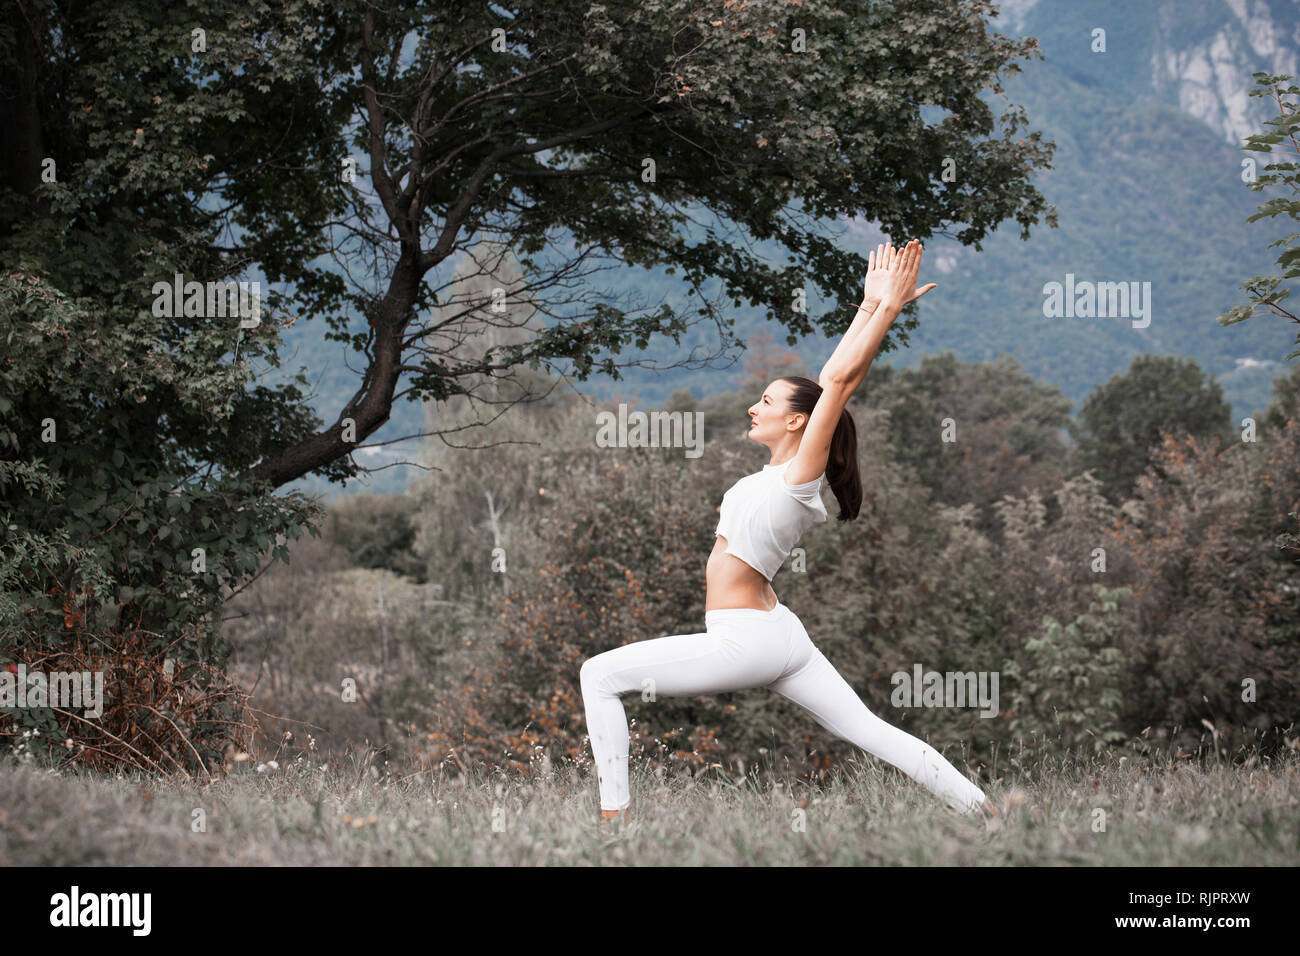 Frau Üben Yoga, Krieger stellen in ländlichen Landschaft Stockfoto